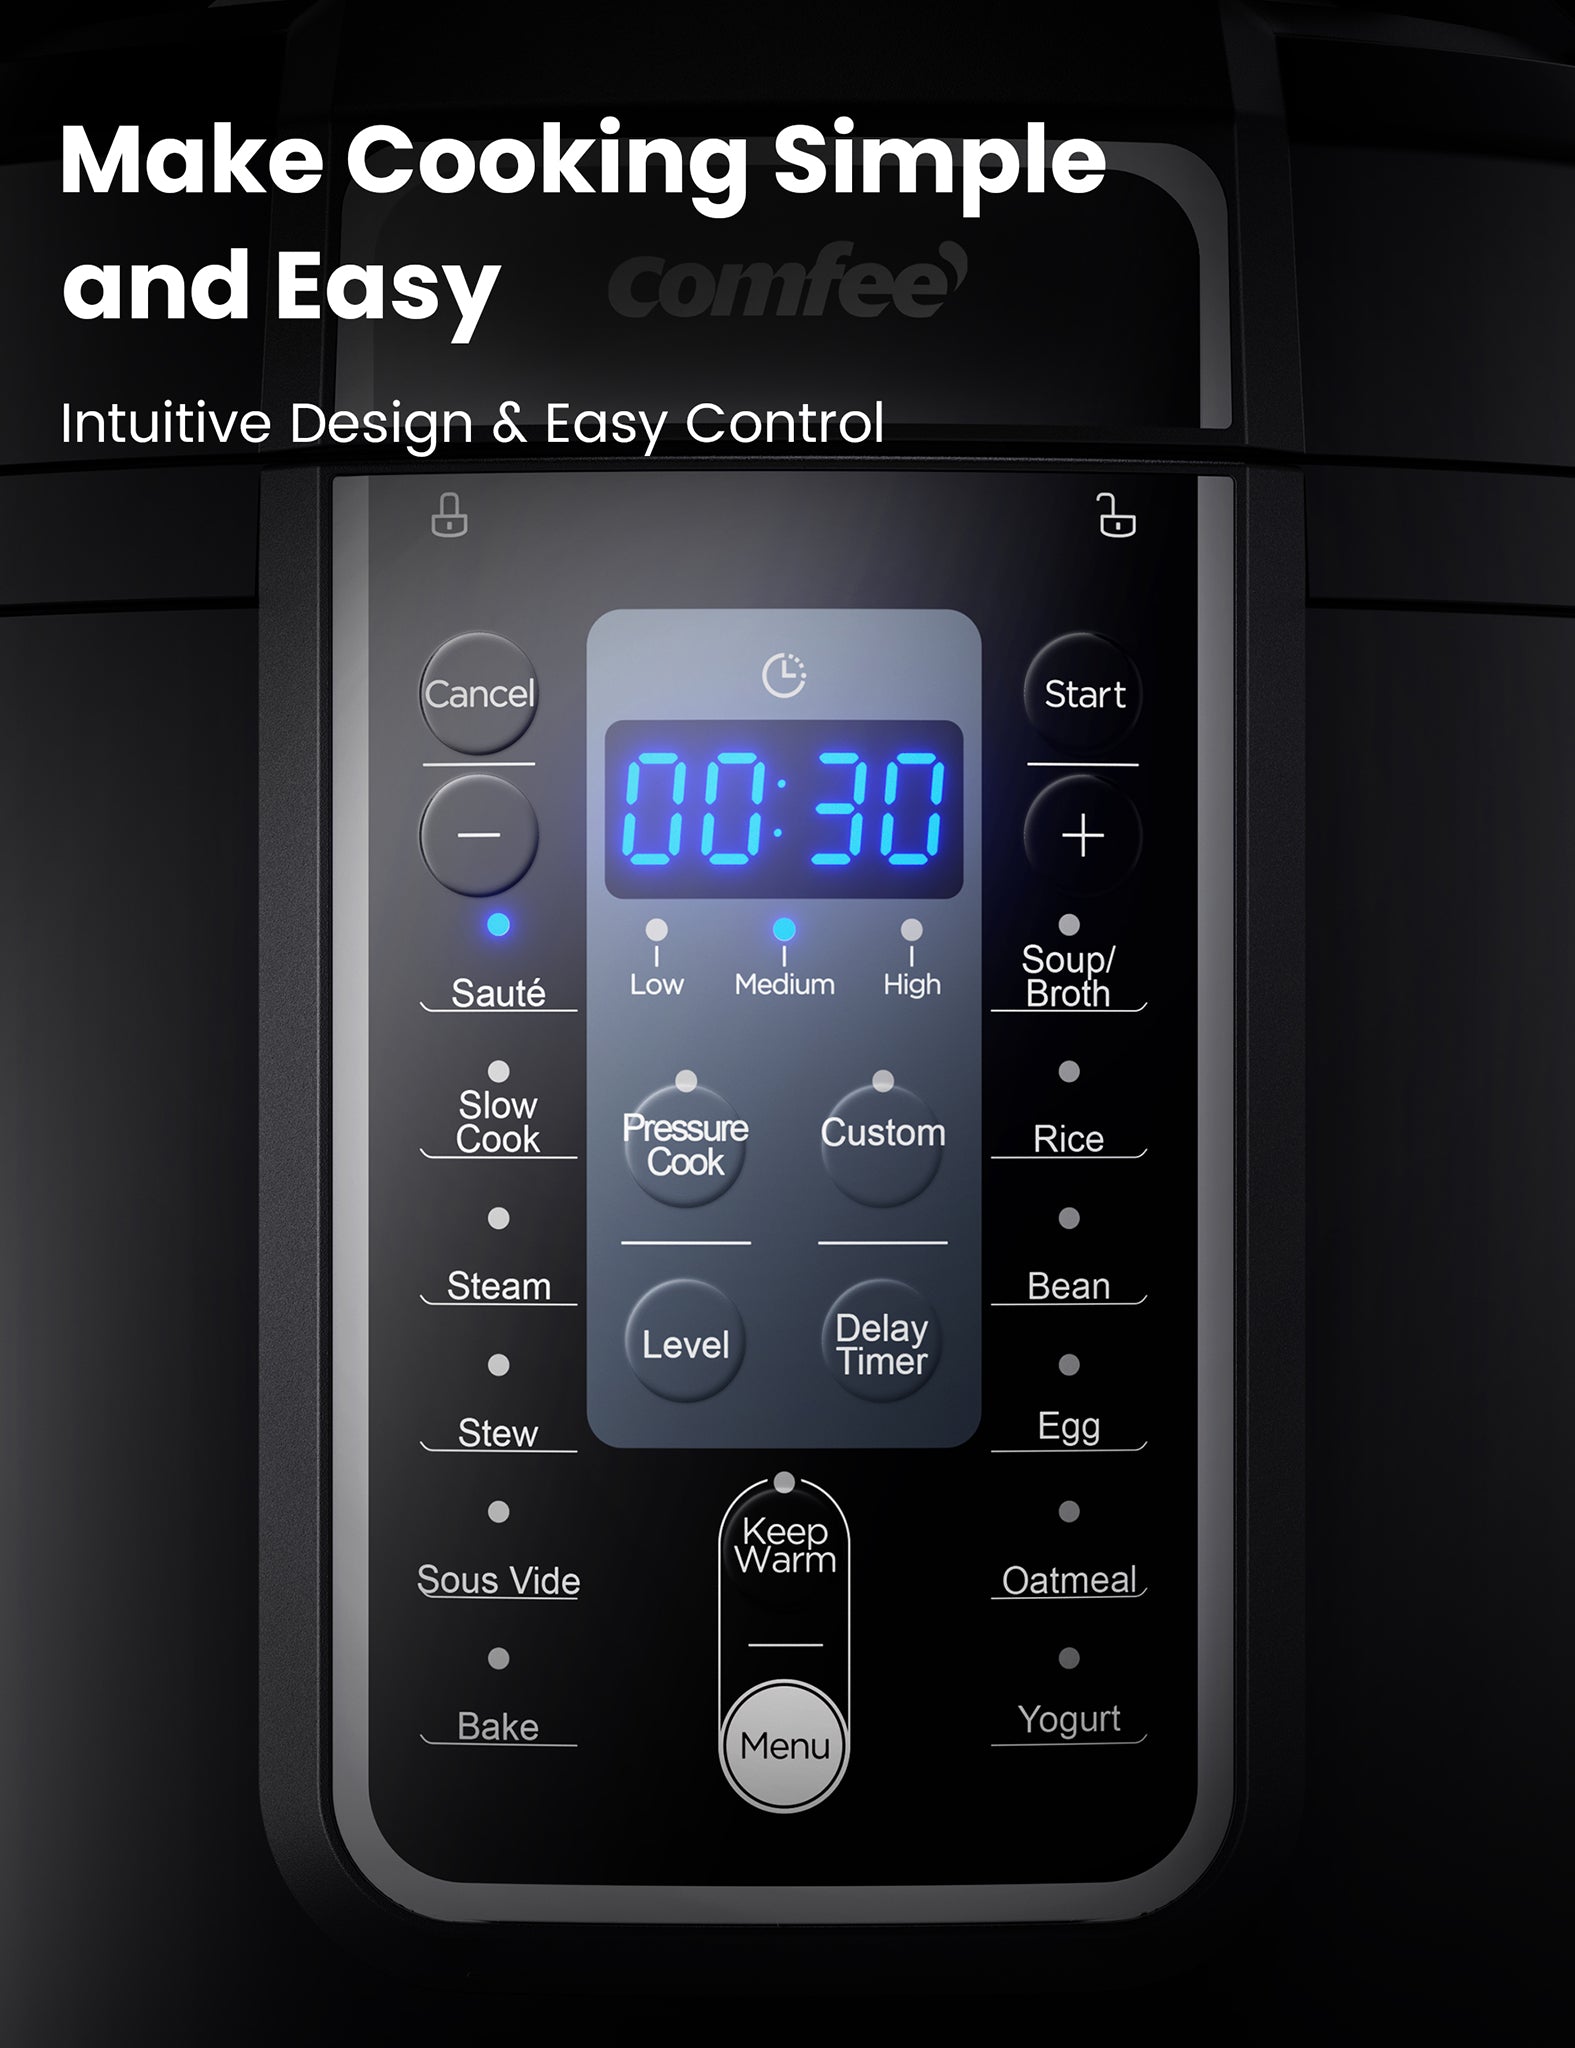 button description on comfee pressure cooker